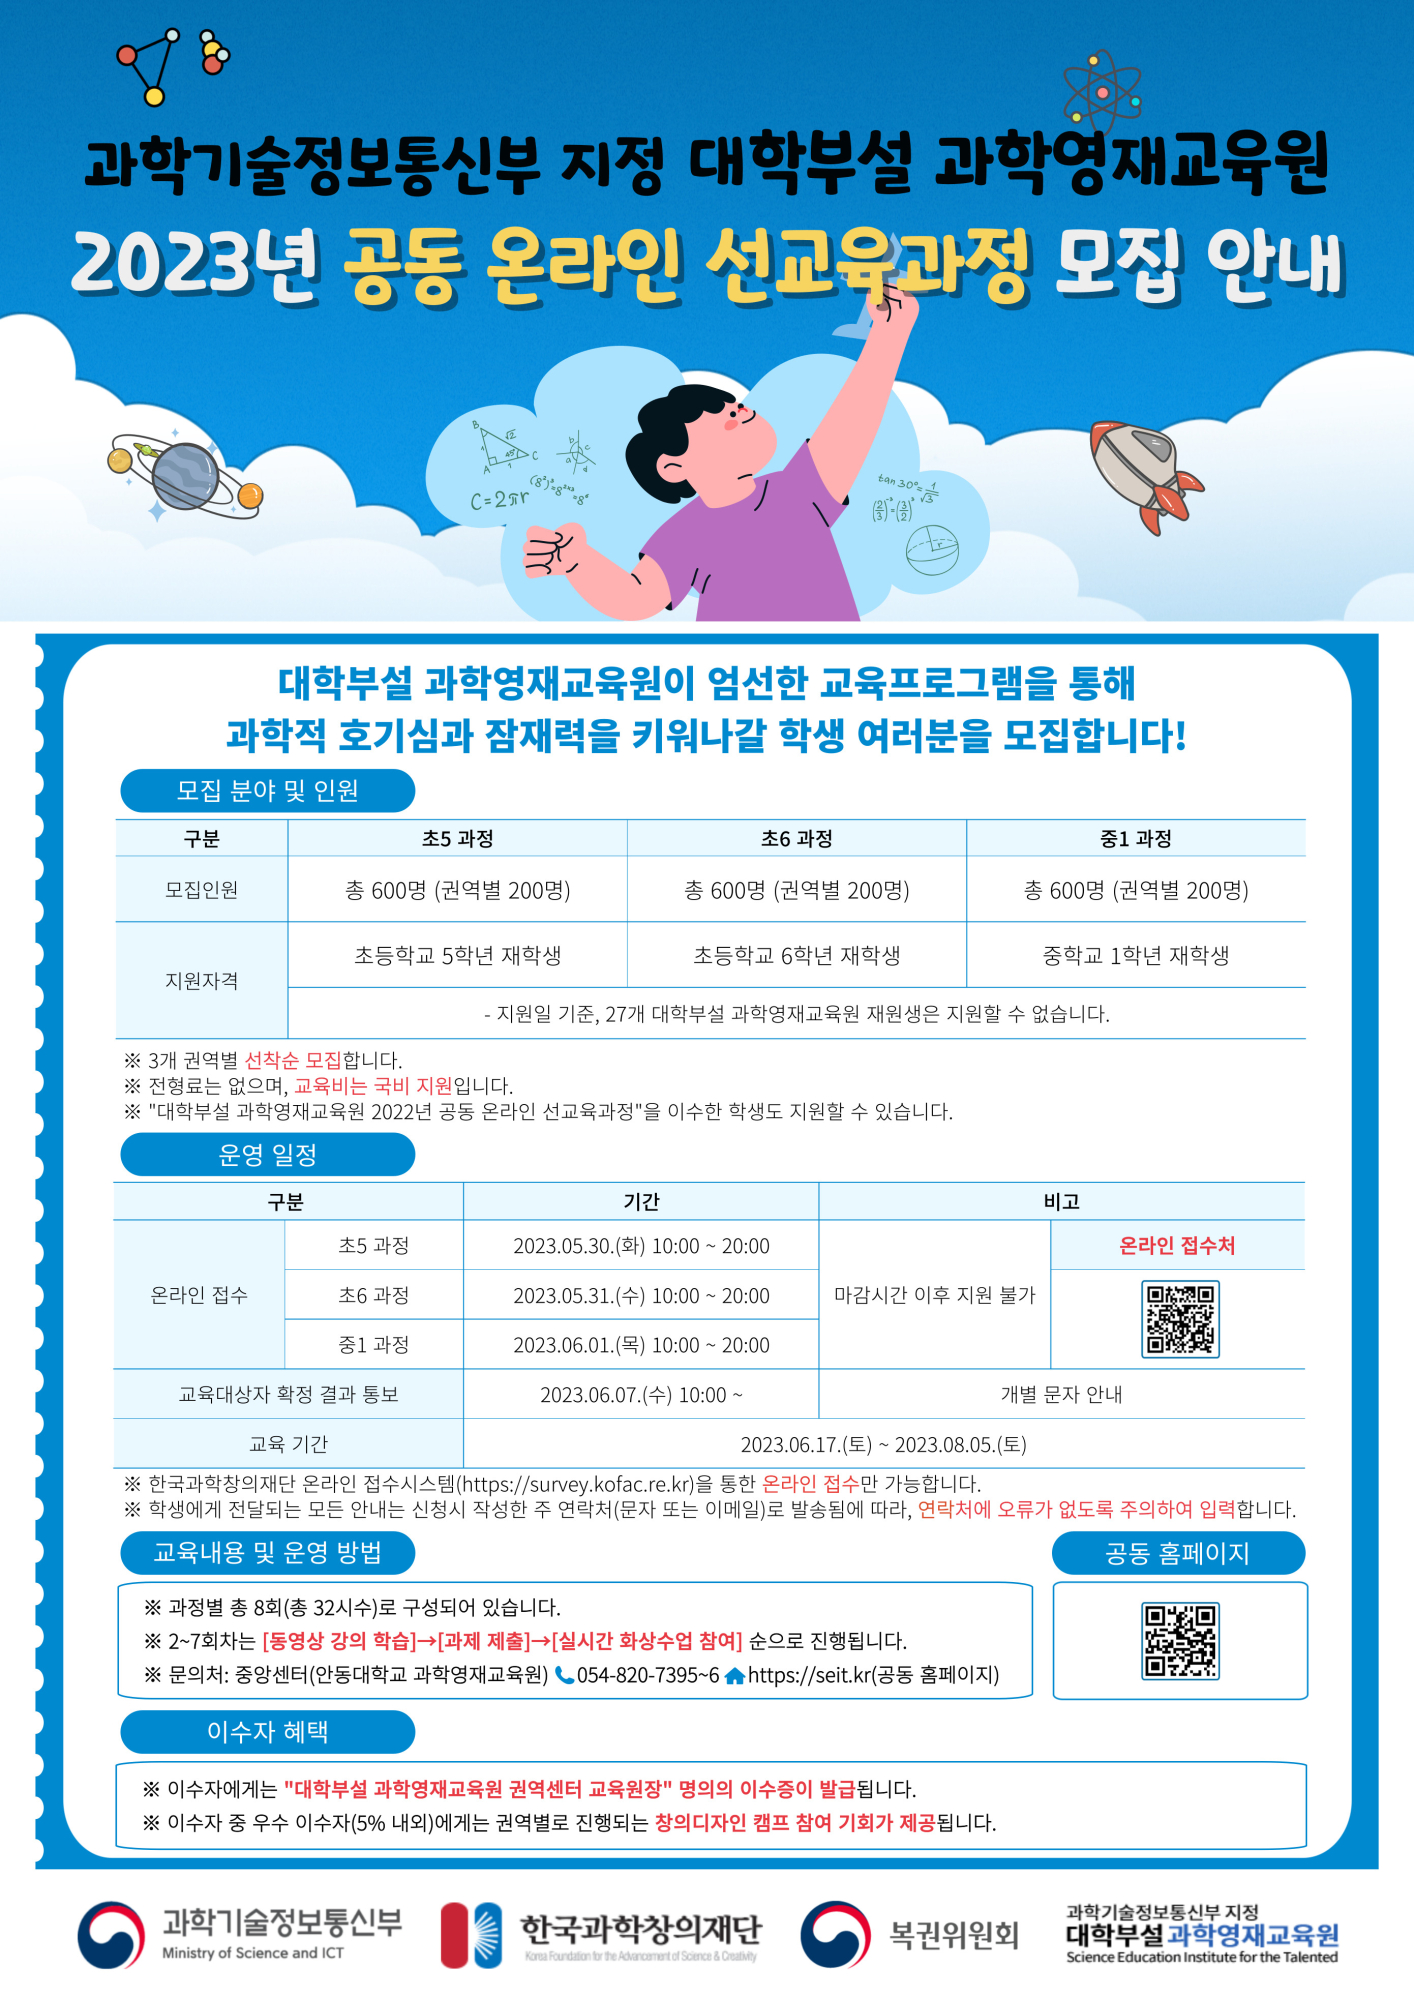 사본 -[붙임2] 2023 선교육과정 포스터_원본